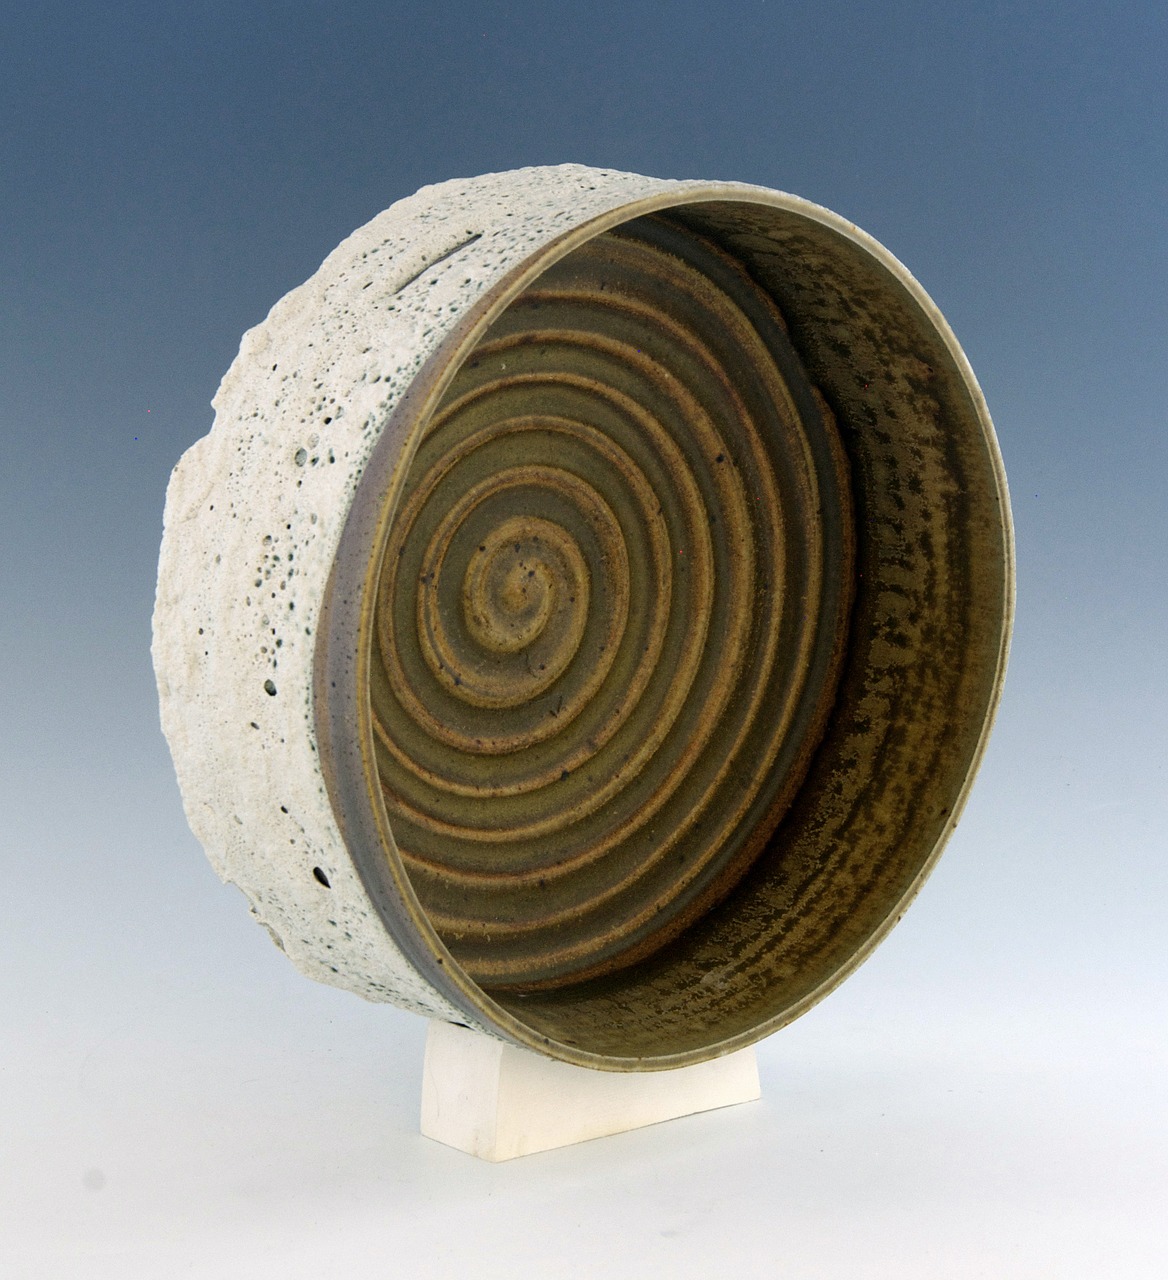 ceramic sculpture clay free photo